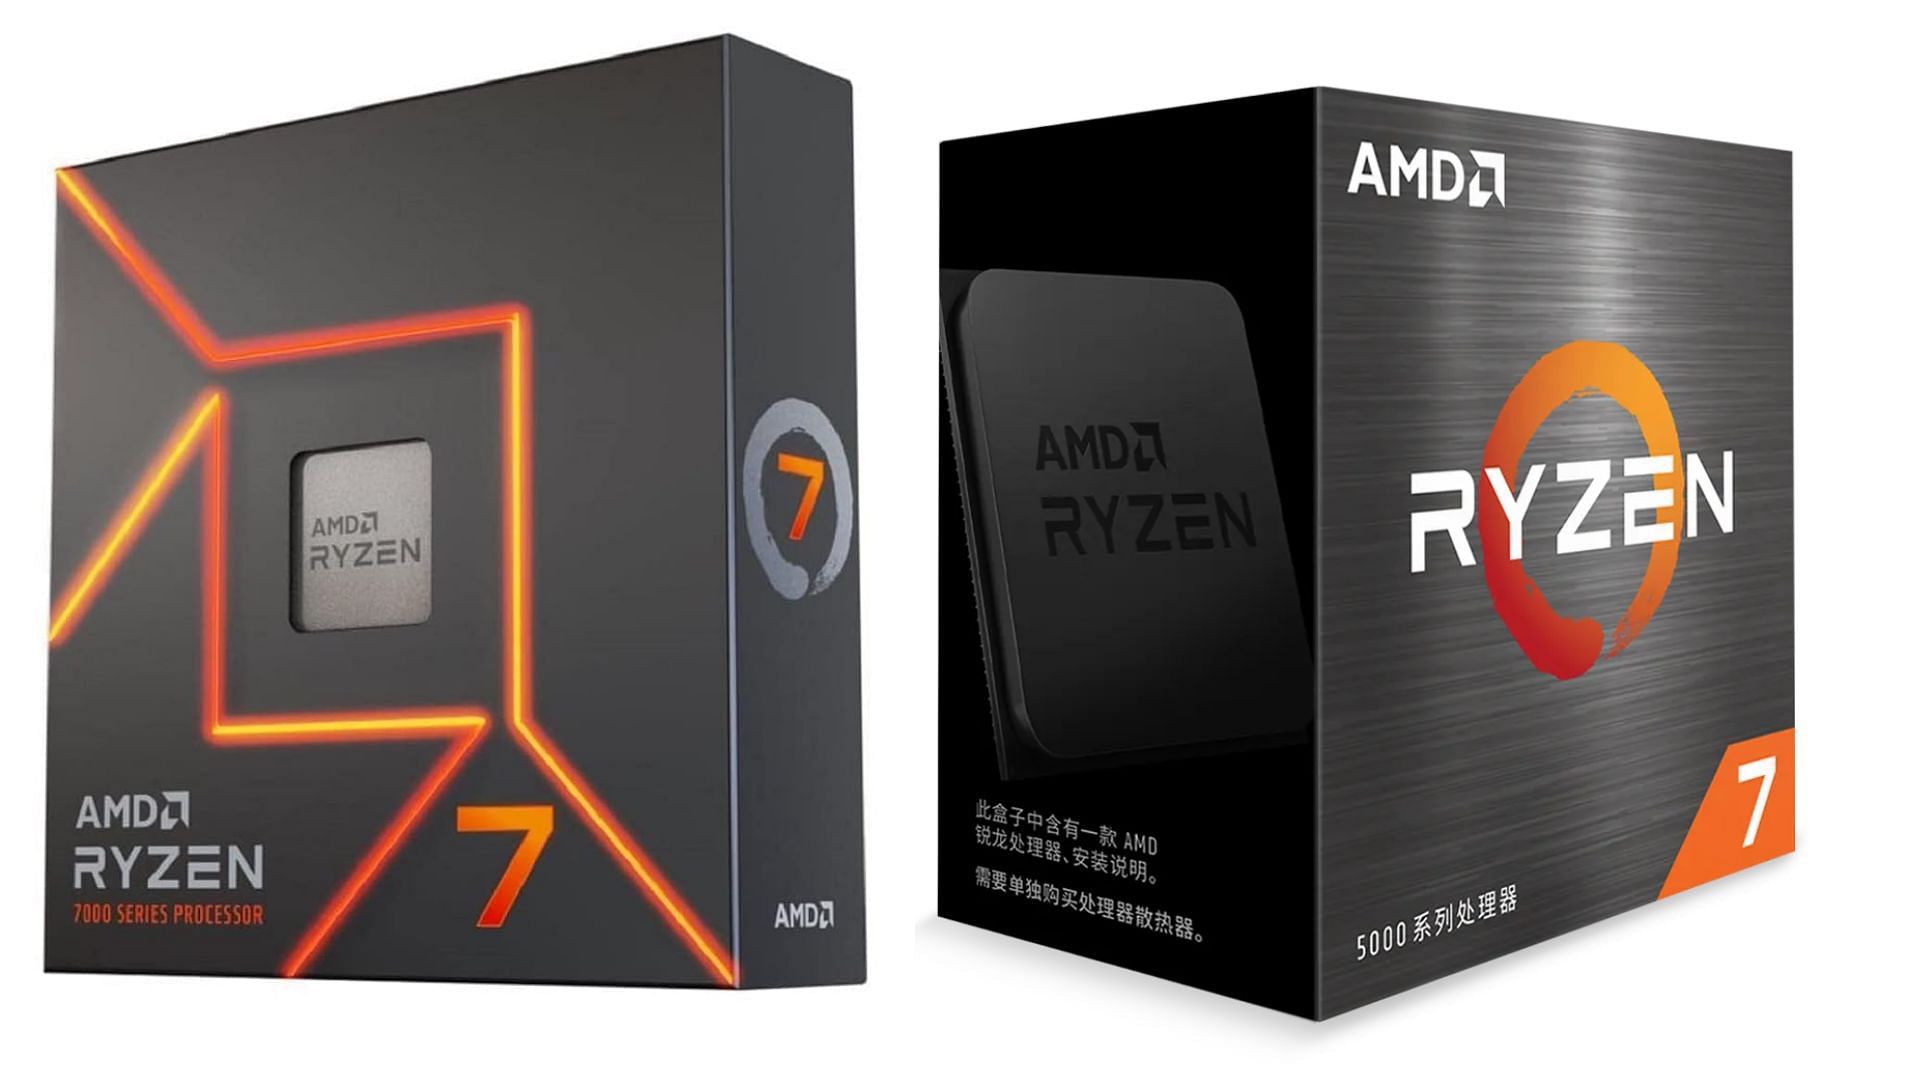 AMD Ryzen 7 7700X vs Ryzen 7 5700X: Which is the best gaming CPU?